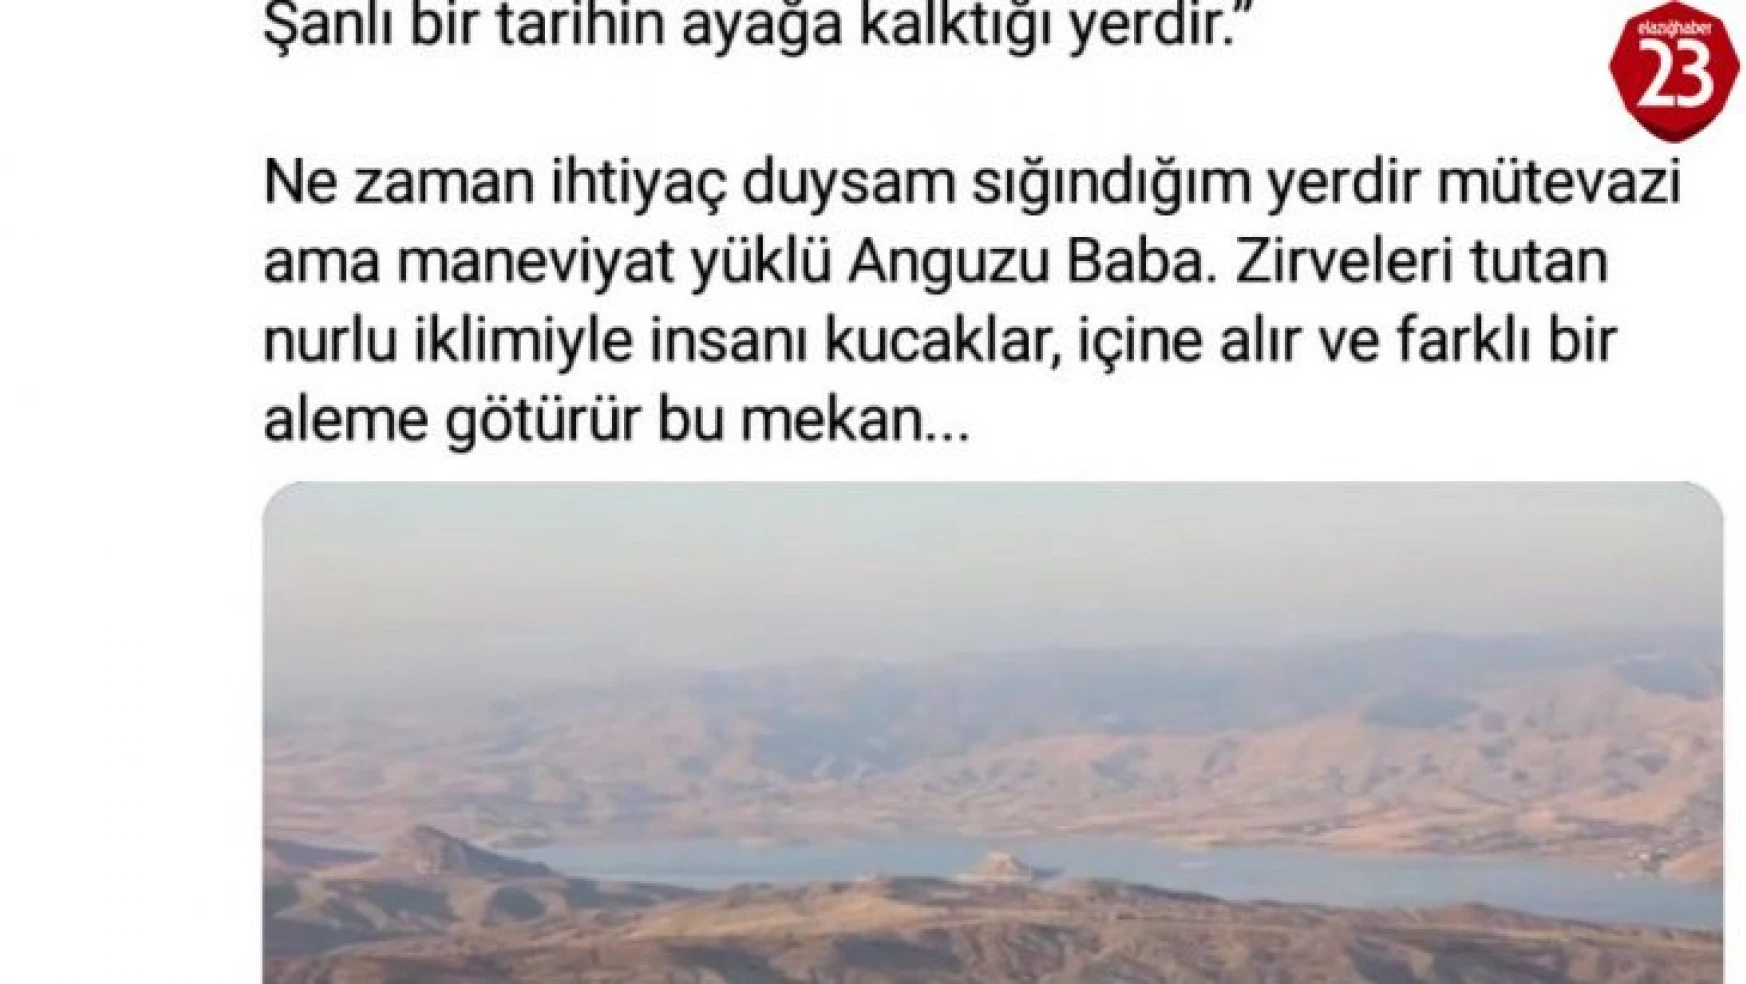 Vali Kaldırım, yazıp seslendirdiği şiiri paylaştı